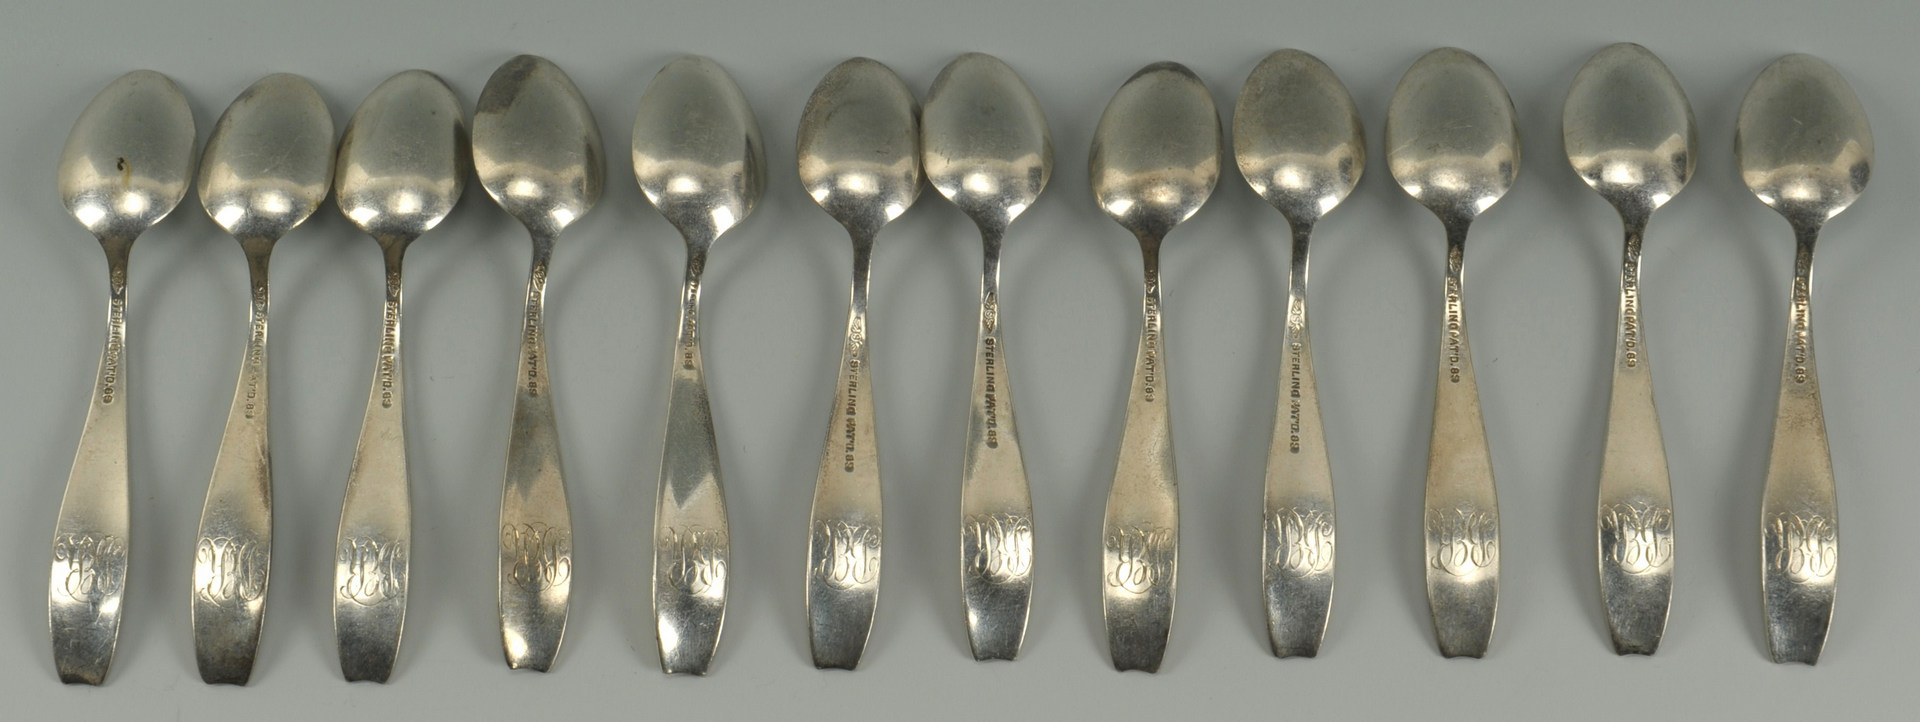 Lot 442: 12 Shiebler Flora Demitasse Spoons